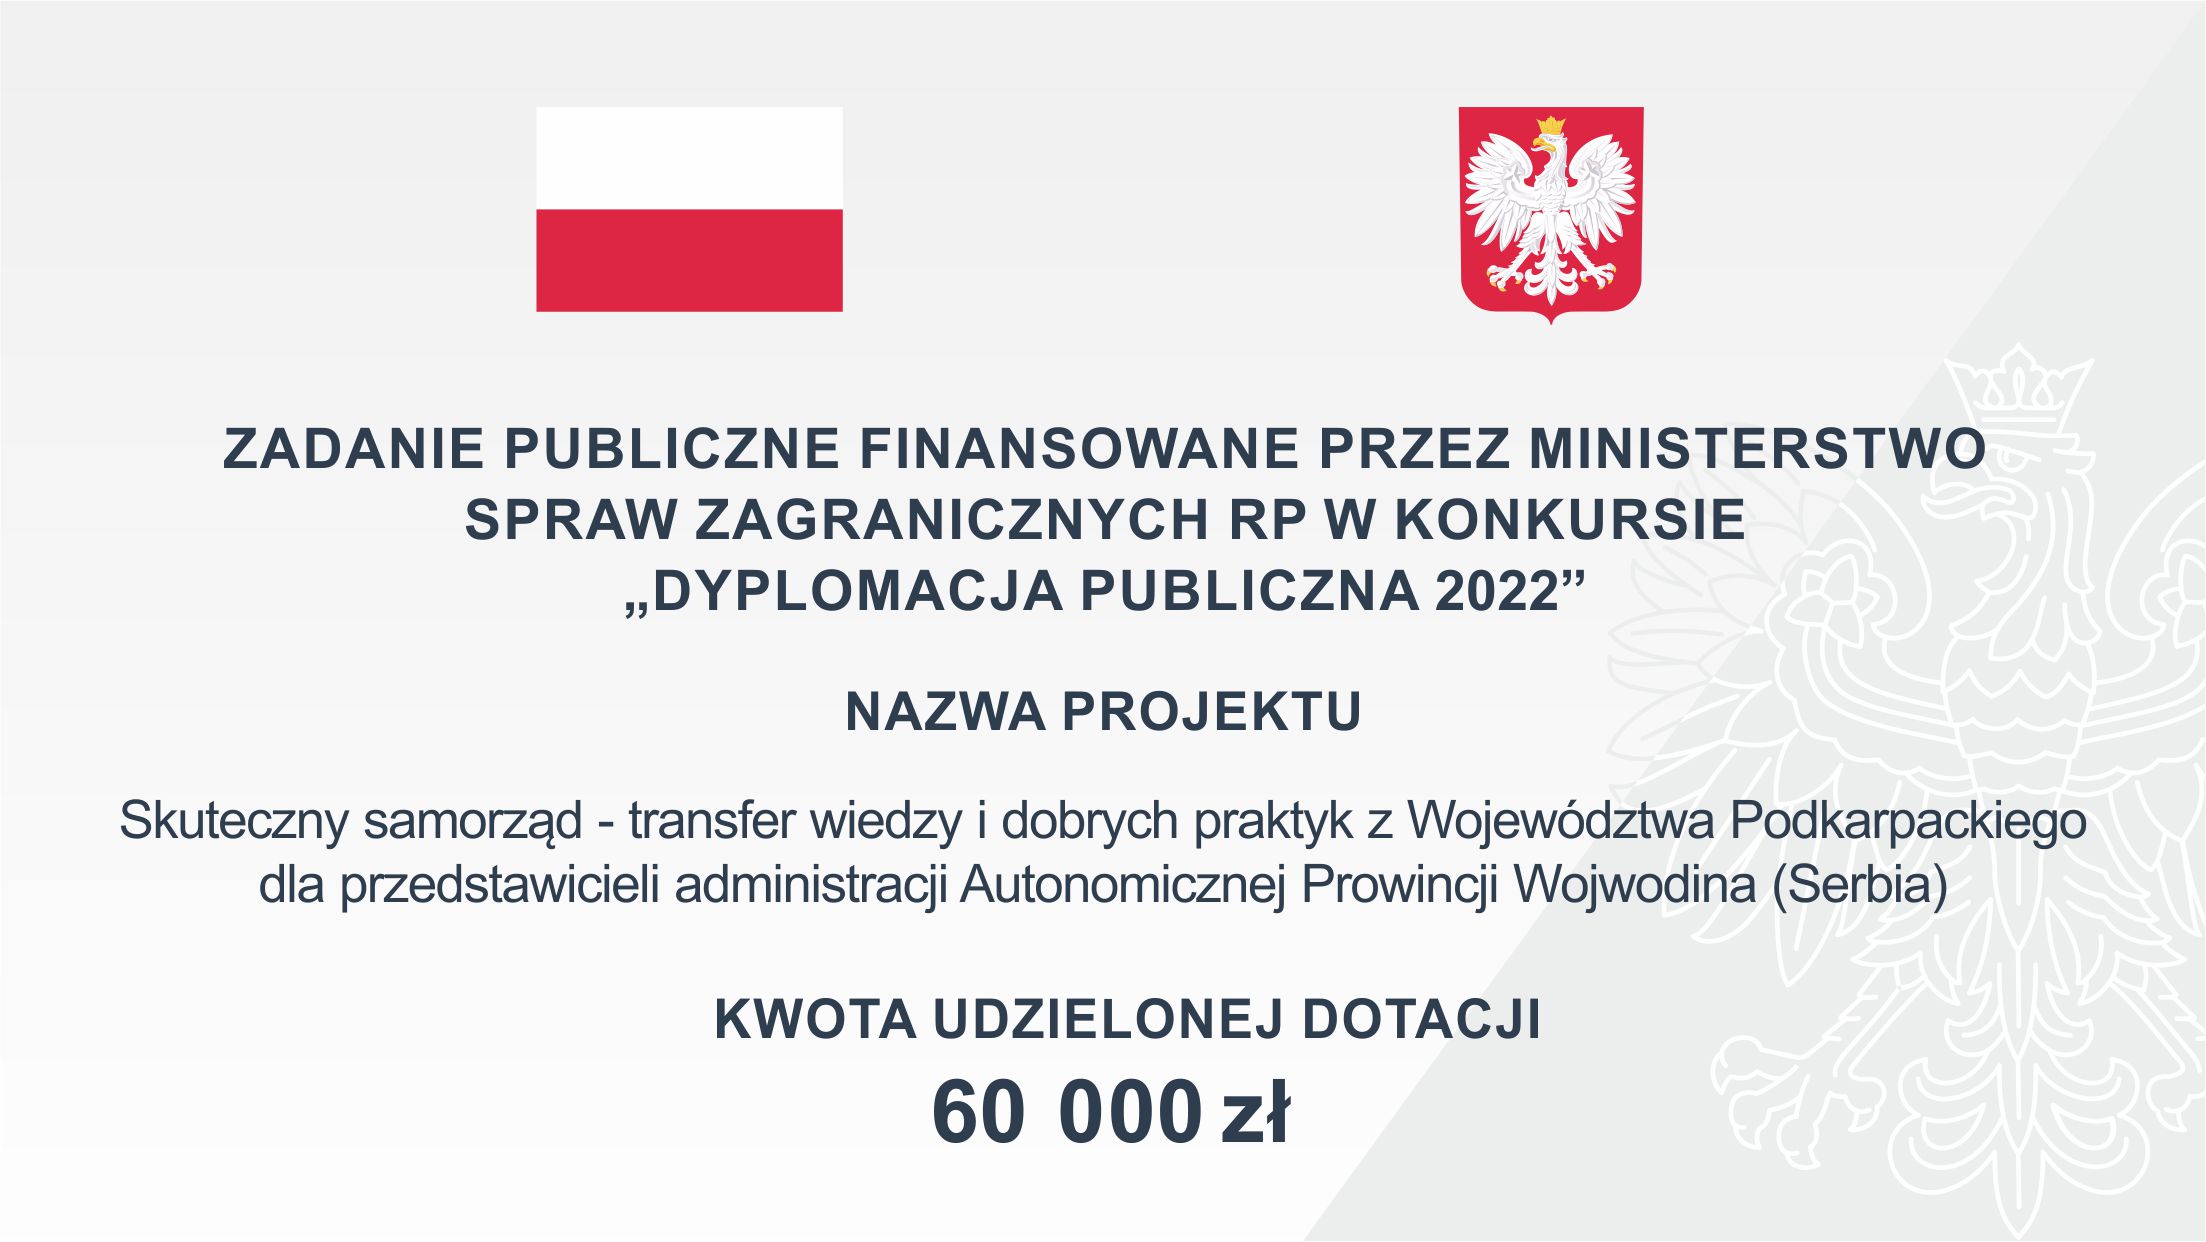 Plakat przedstawiający zadanie publiczne "Dyplomacja publiczna 2022" o wartości 60 mln złotych